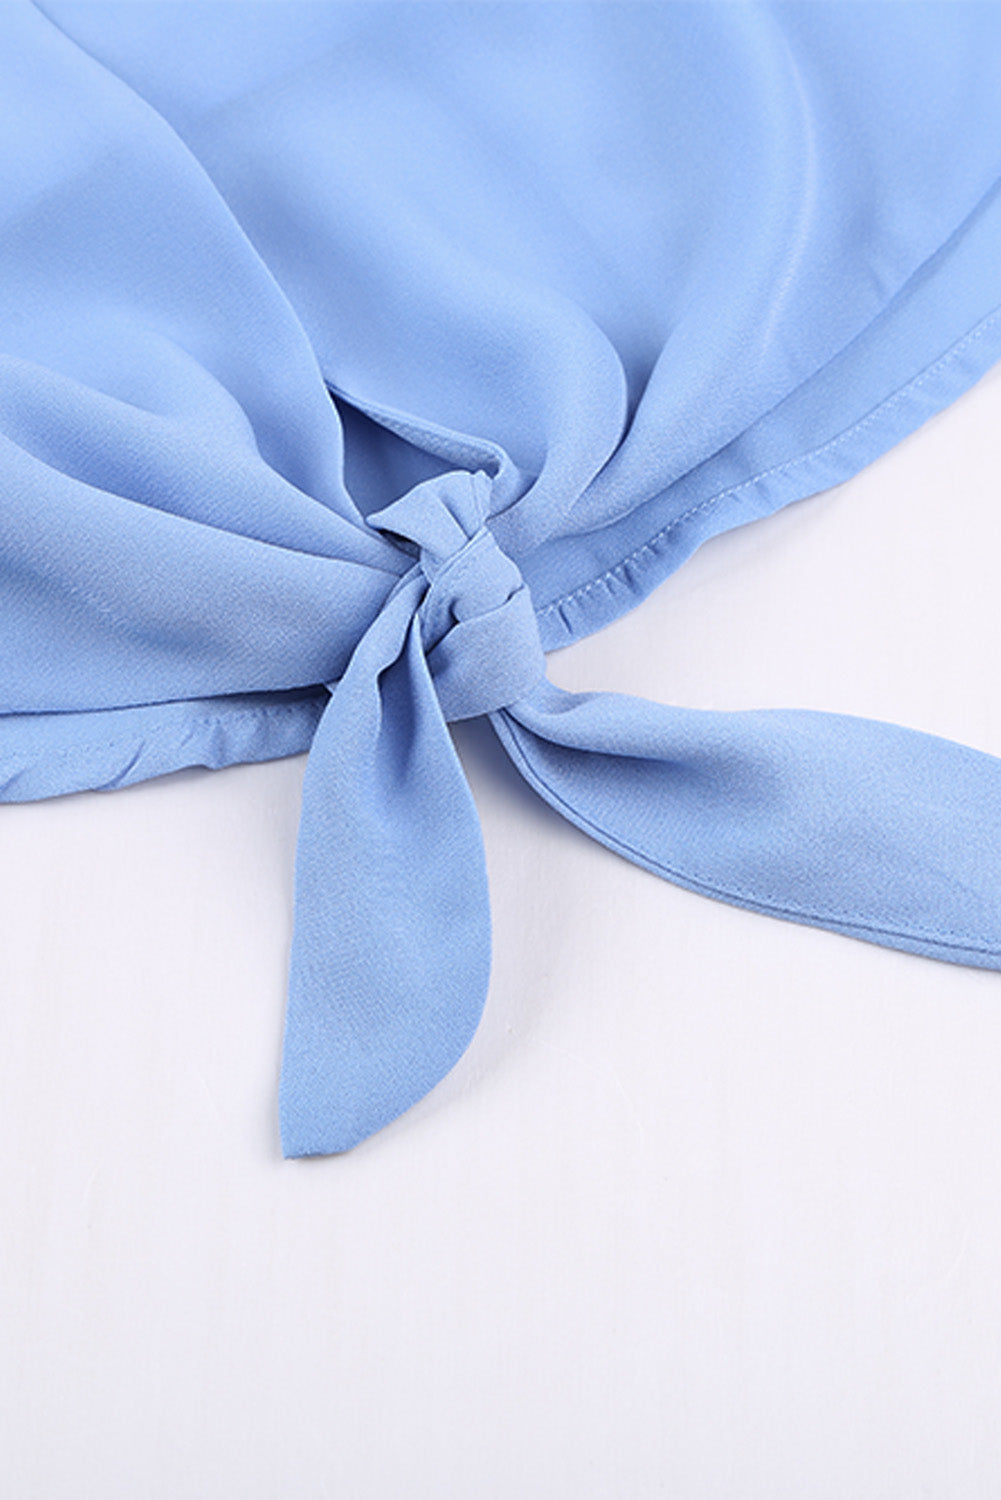 Haut Femme Bleu Ciel Manches Courtes Cravate Boutonnee